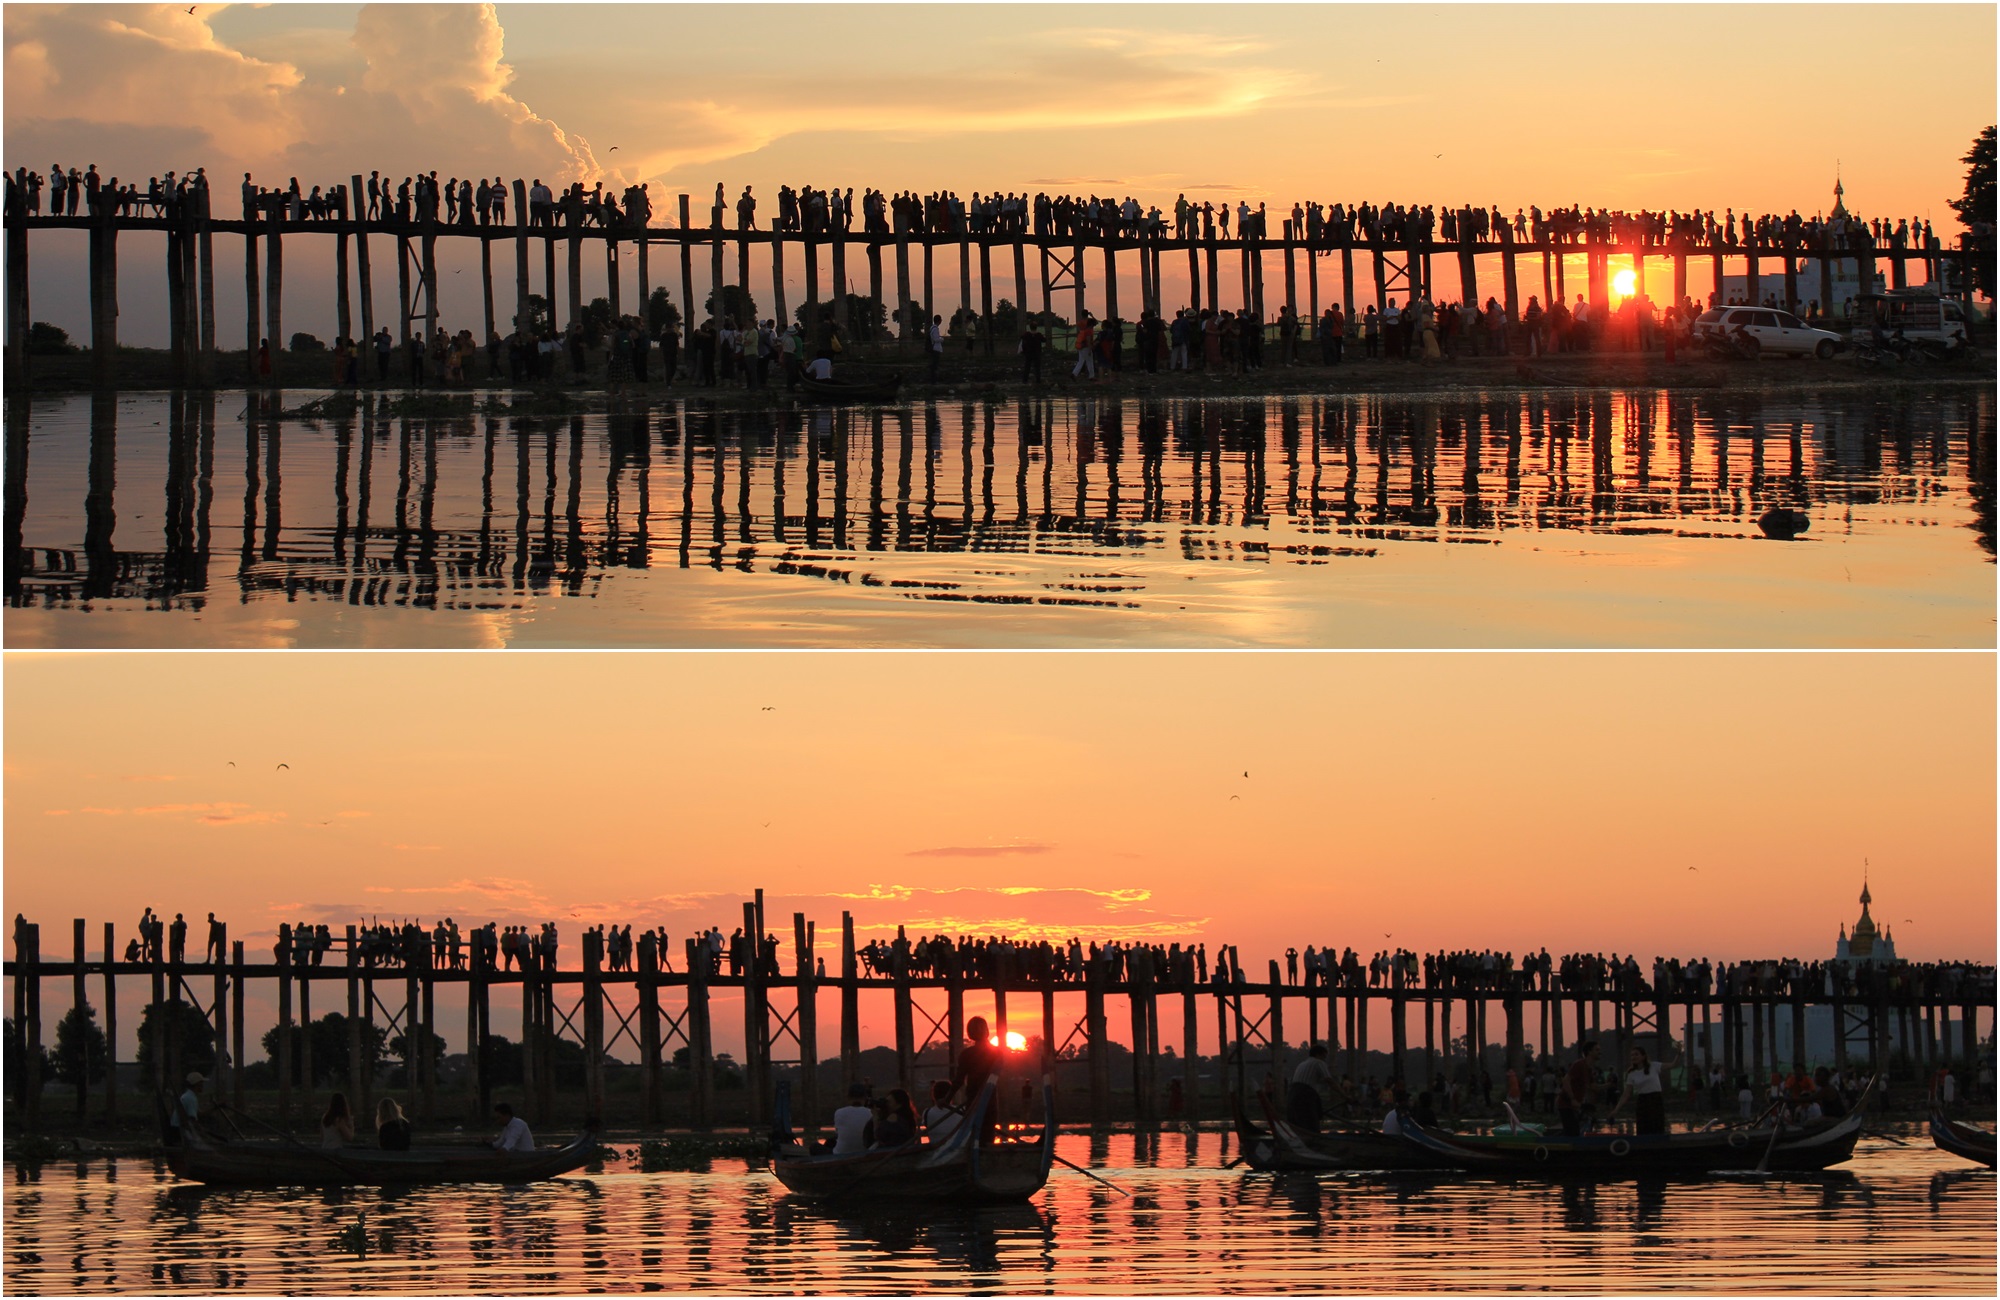 Voyage Birmanie - Pont U Bein coucher de soleil - Amplitudes